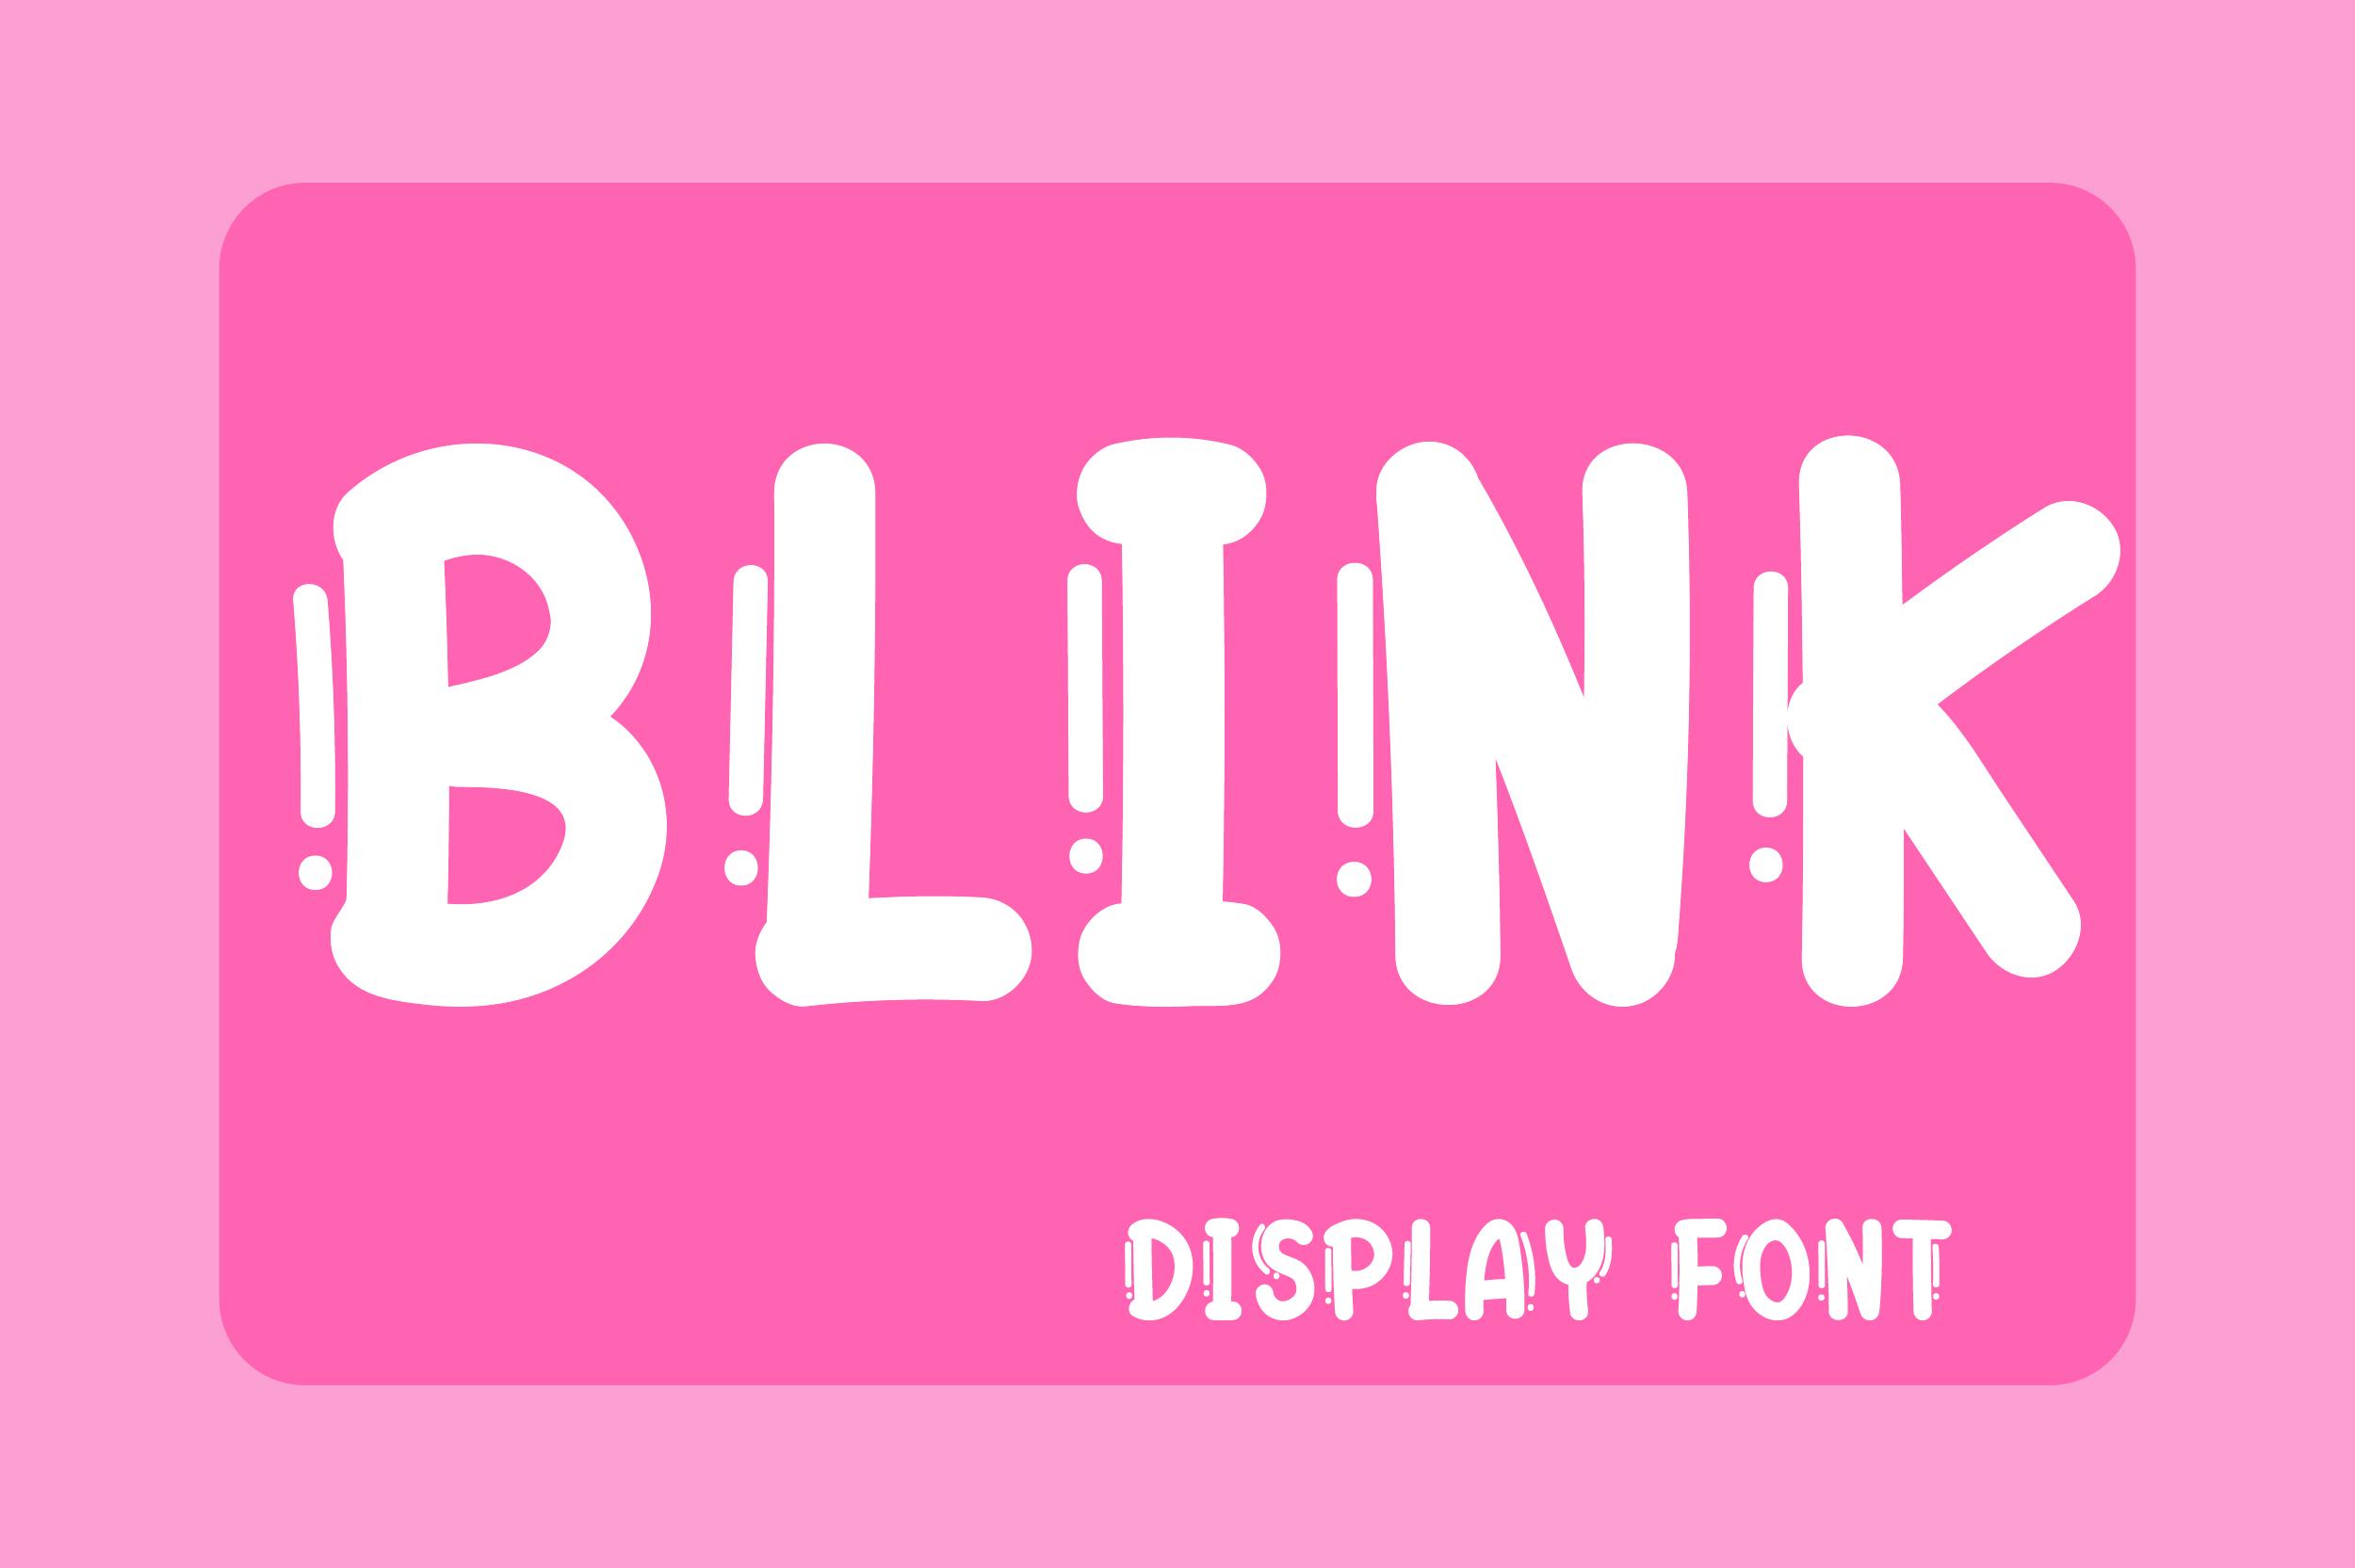 Blink Font